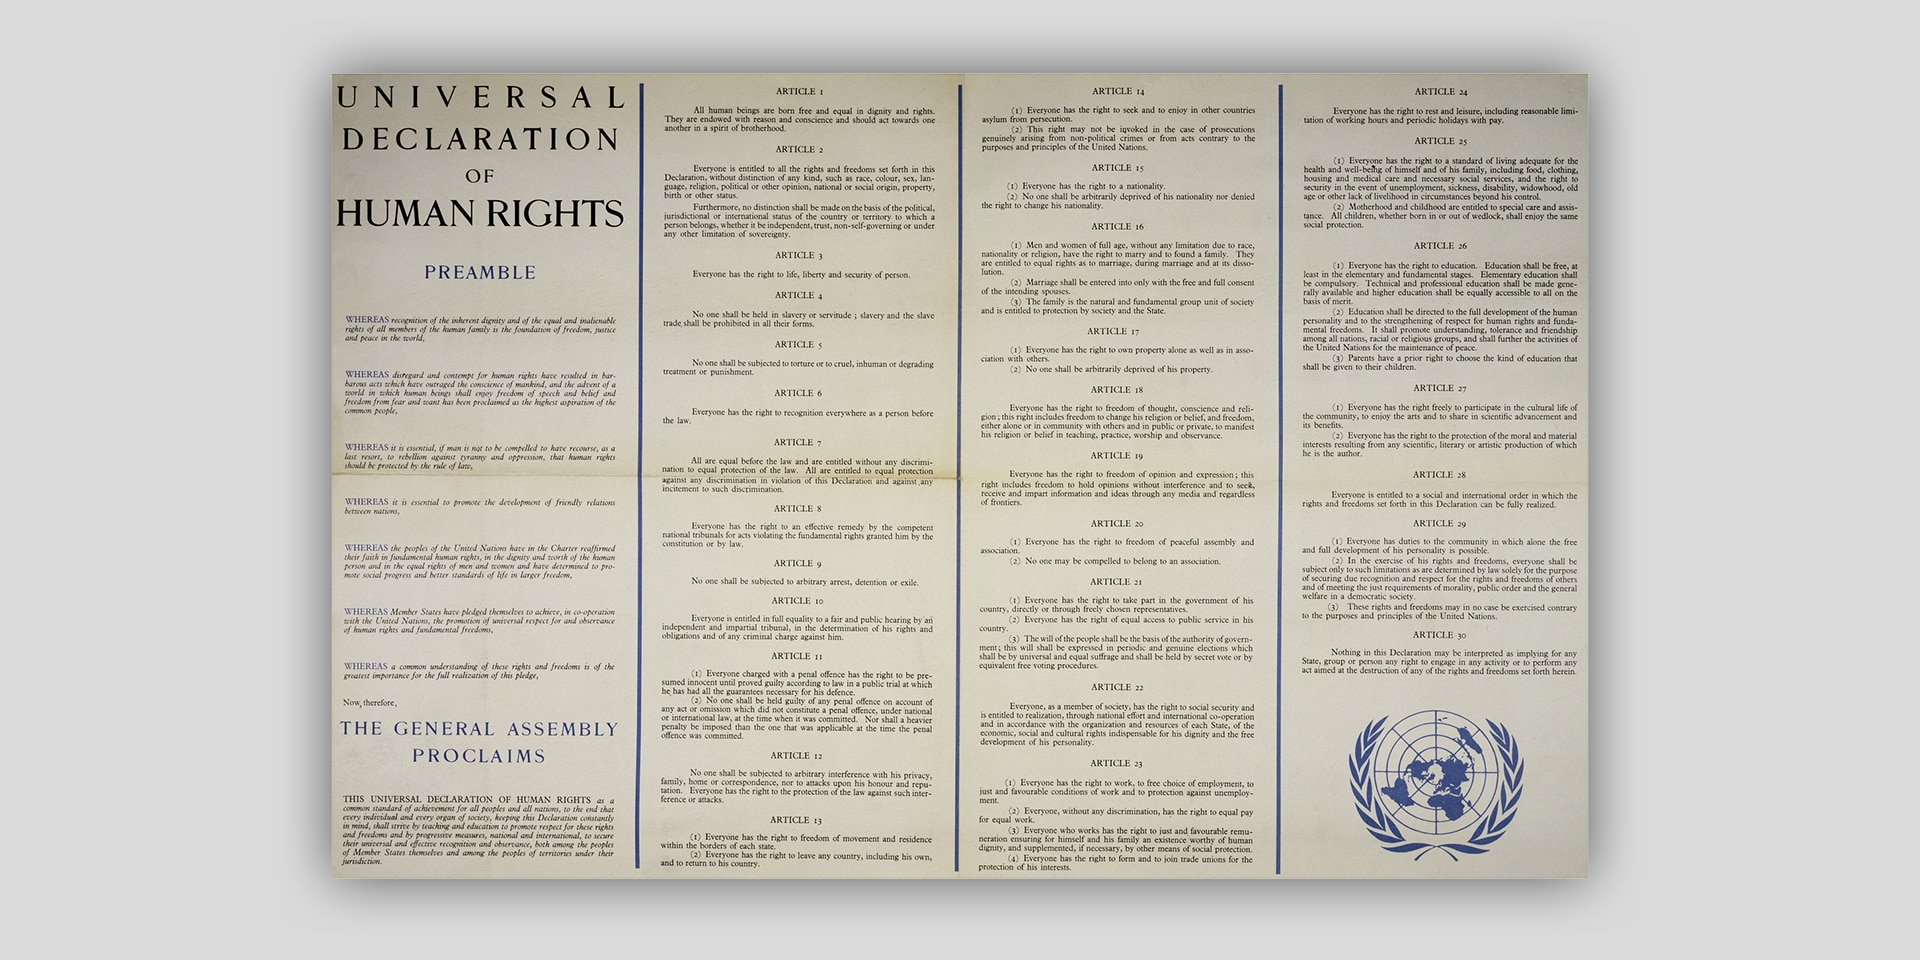 Universal Declaration of Human Rights: still relevant, still